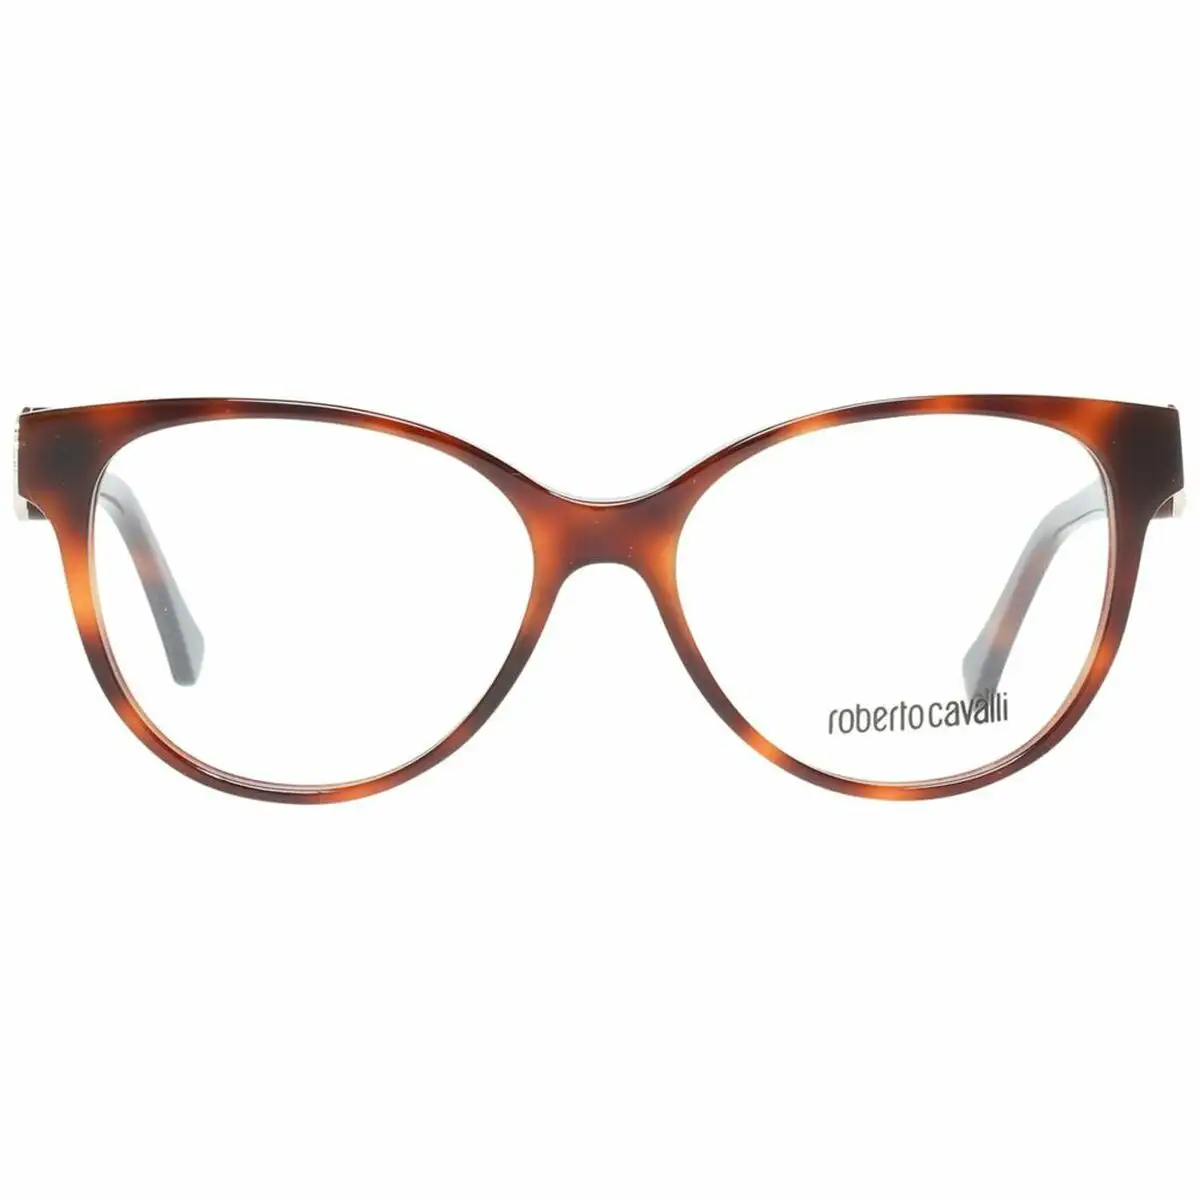 Monture de lunettes femme roberto cavalli rc5047 52052 marron o 52 mm _9778. DIAYTAR SENEGAL - Votre Passage vers l'Élégance Accessible. Parcourez notre boutique en ligne pour trouver des produits qui vous permettent d'allier style et économies.